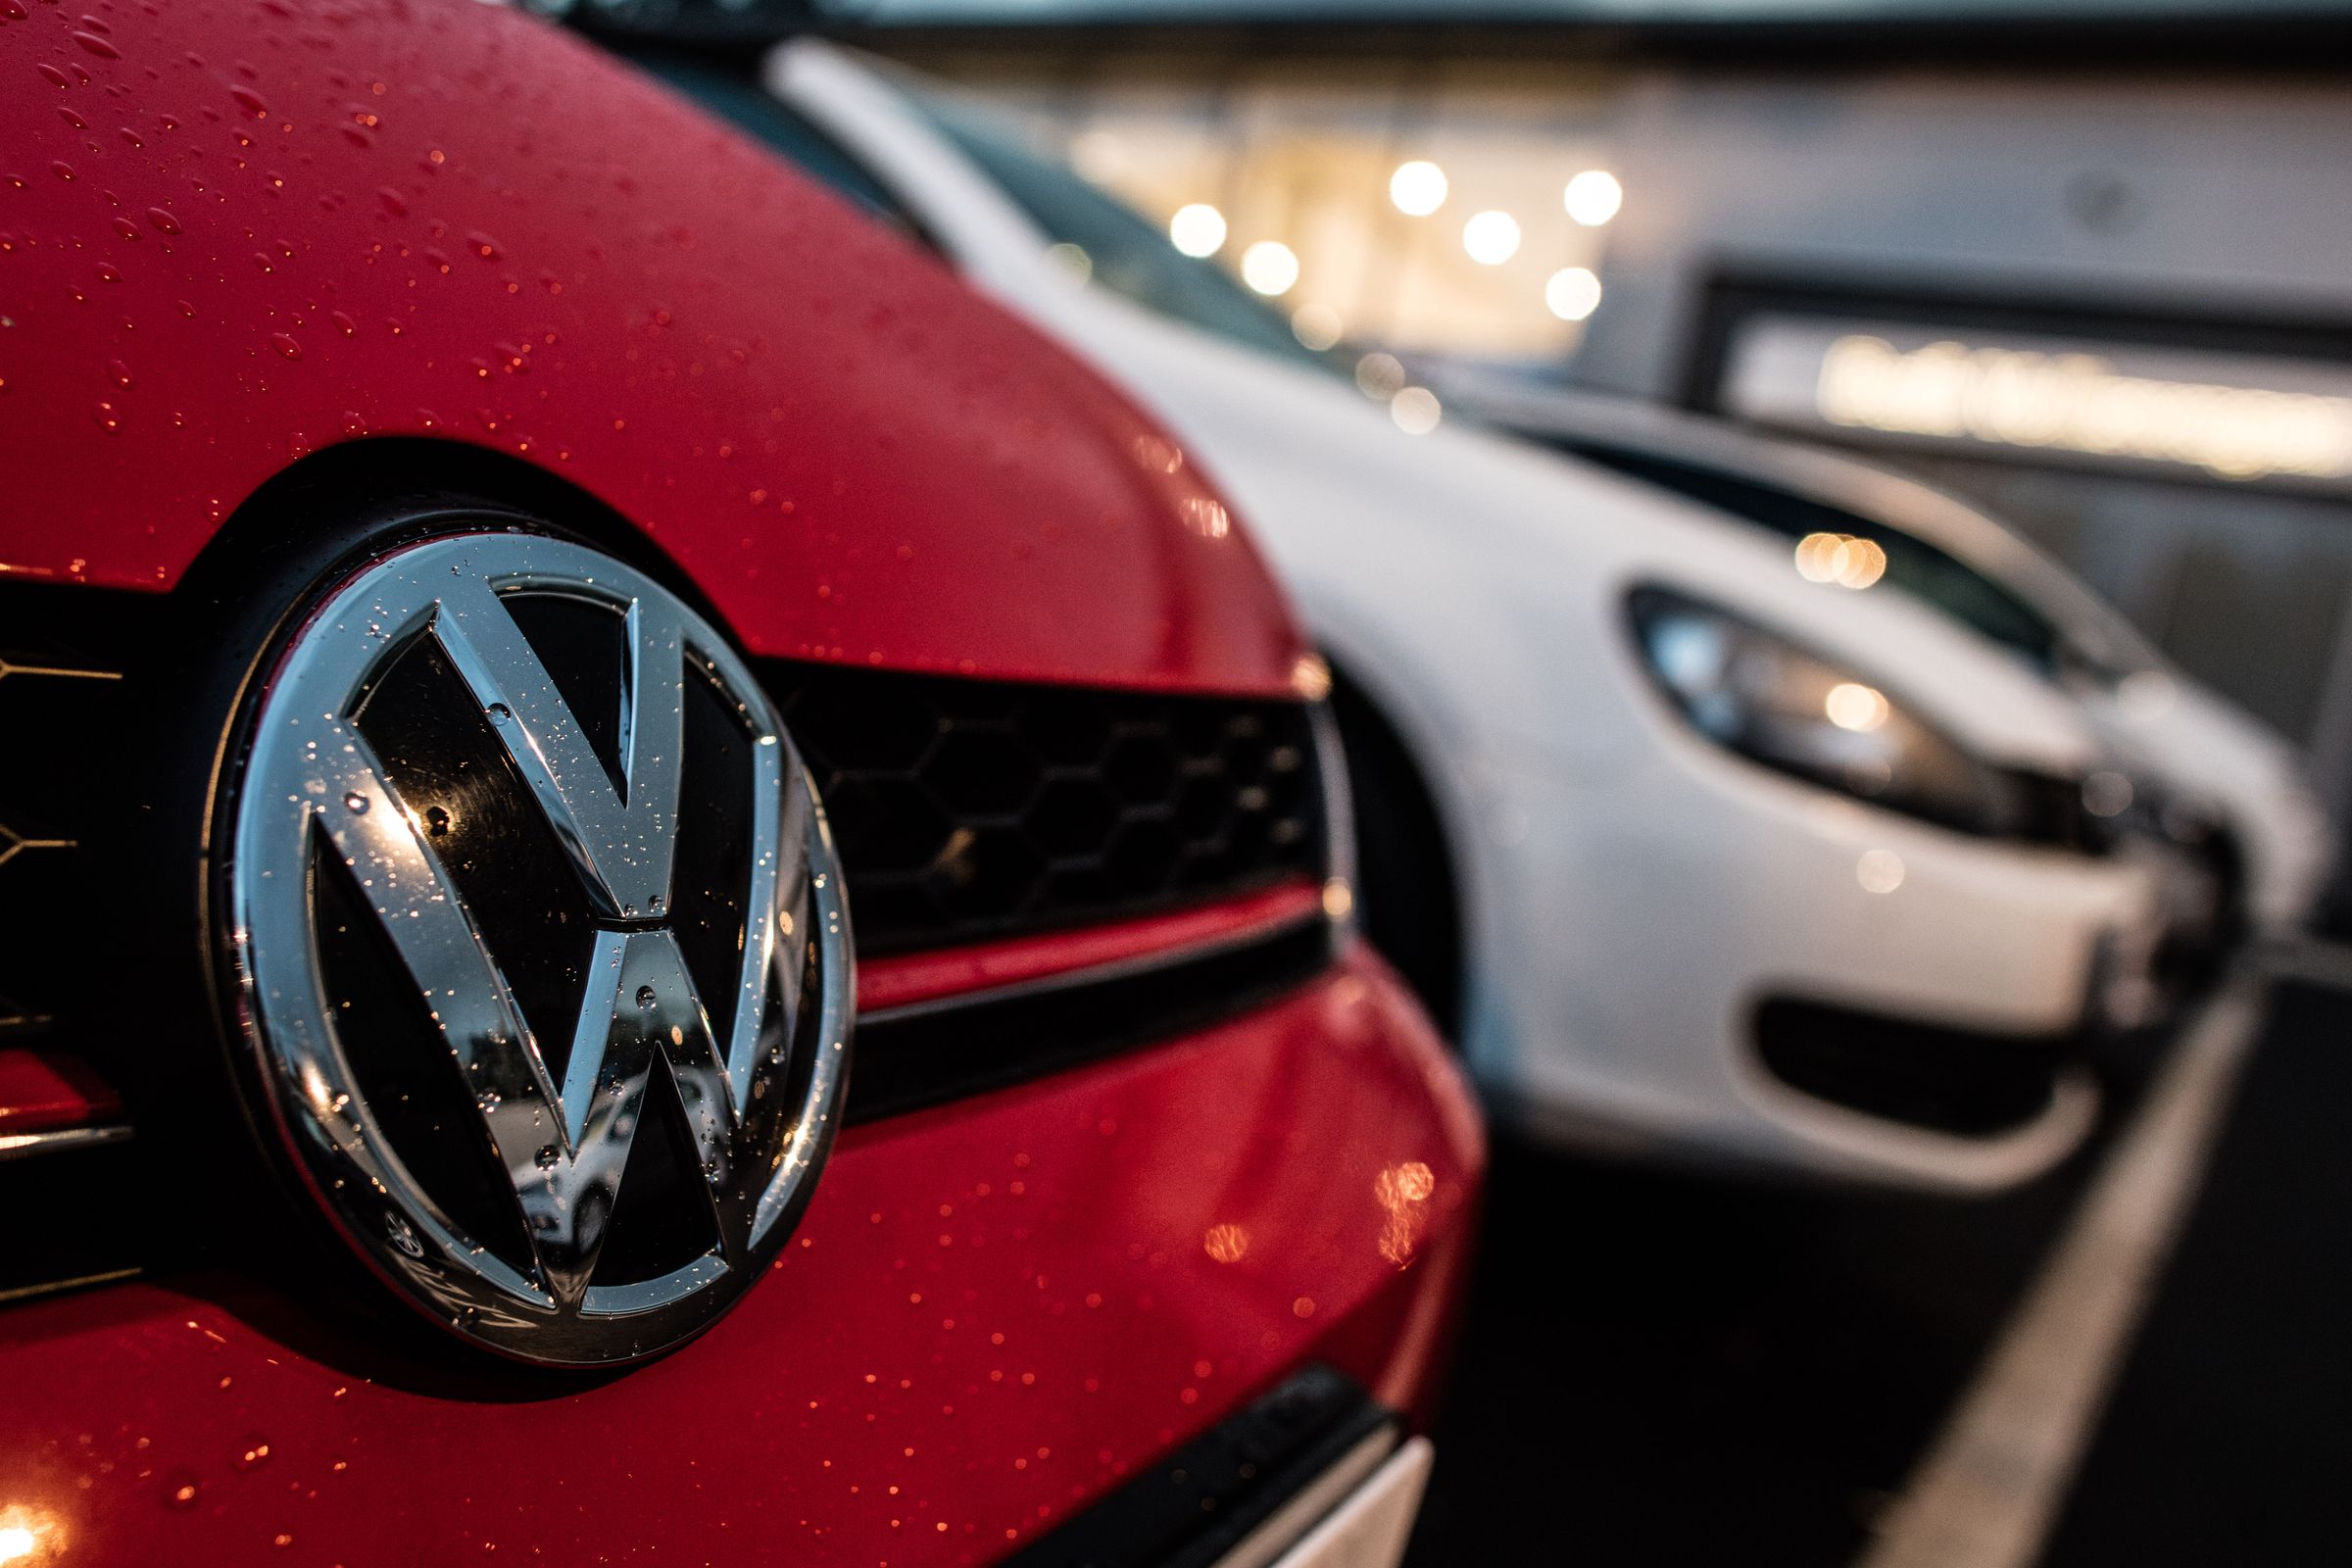 Debate Over Vehicle Emissions Intensifies As Volkswagen Scandal Widens